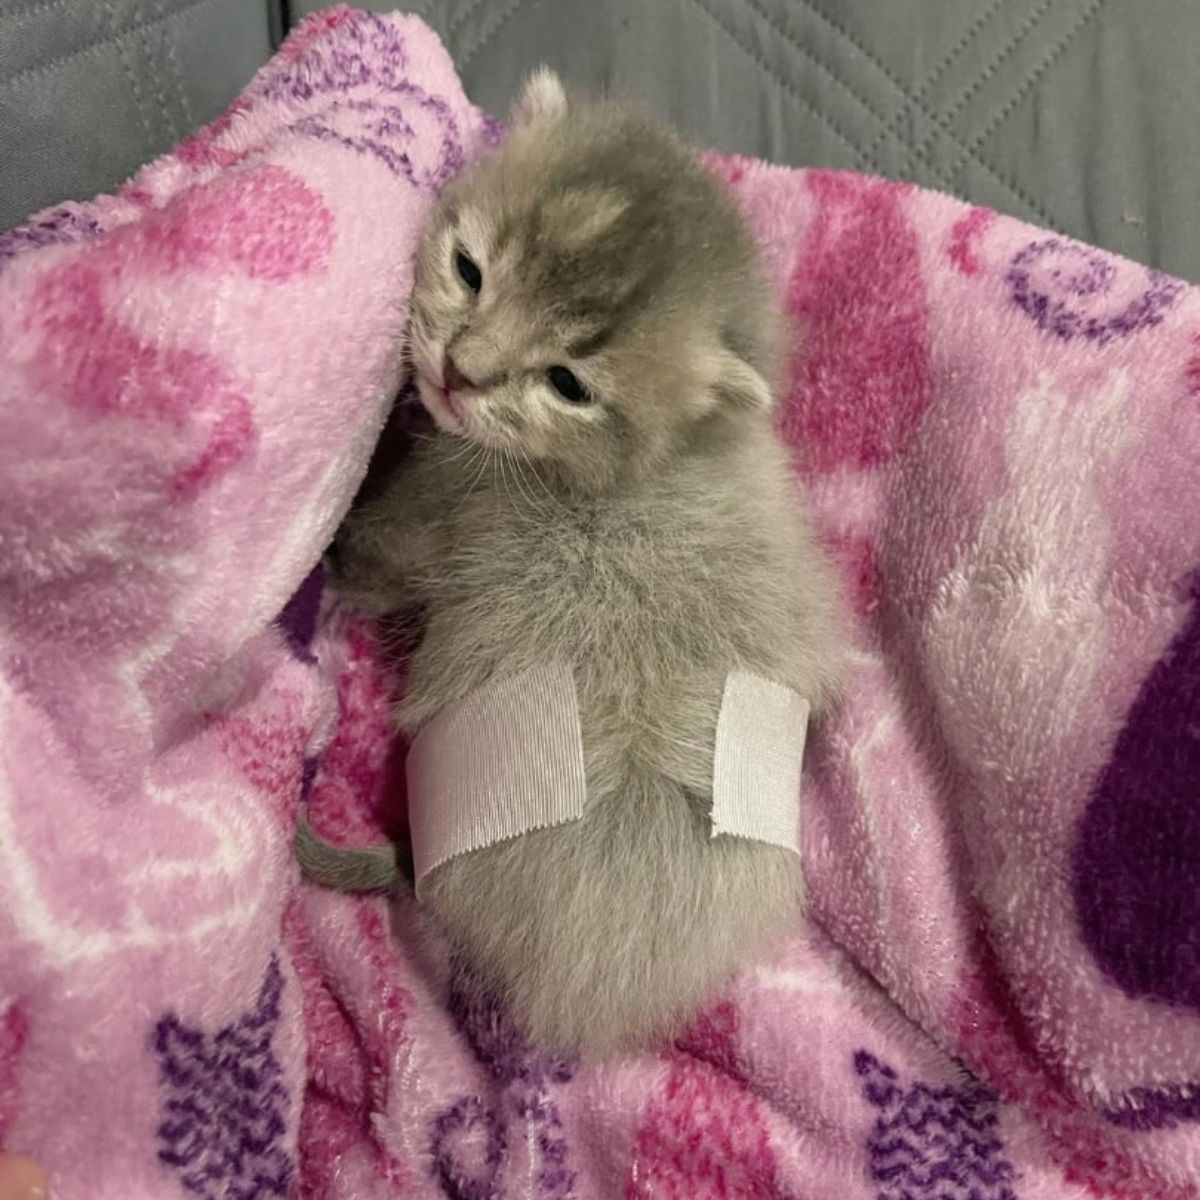 kitten lying on pink blanket